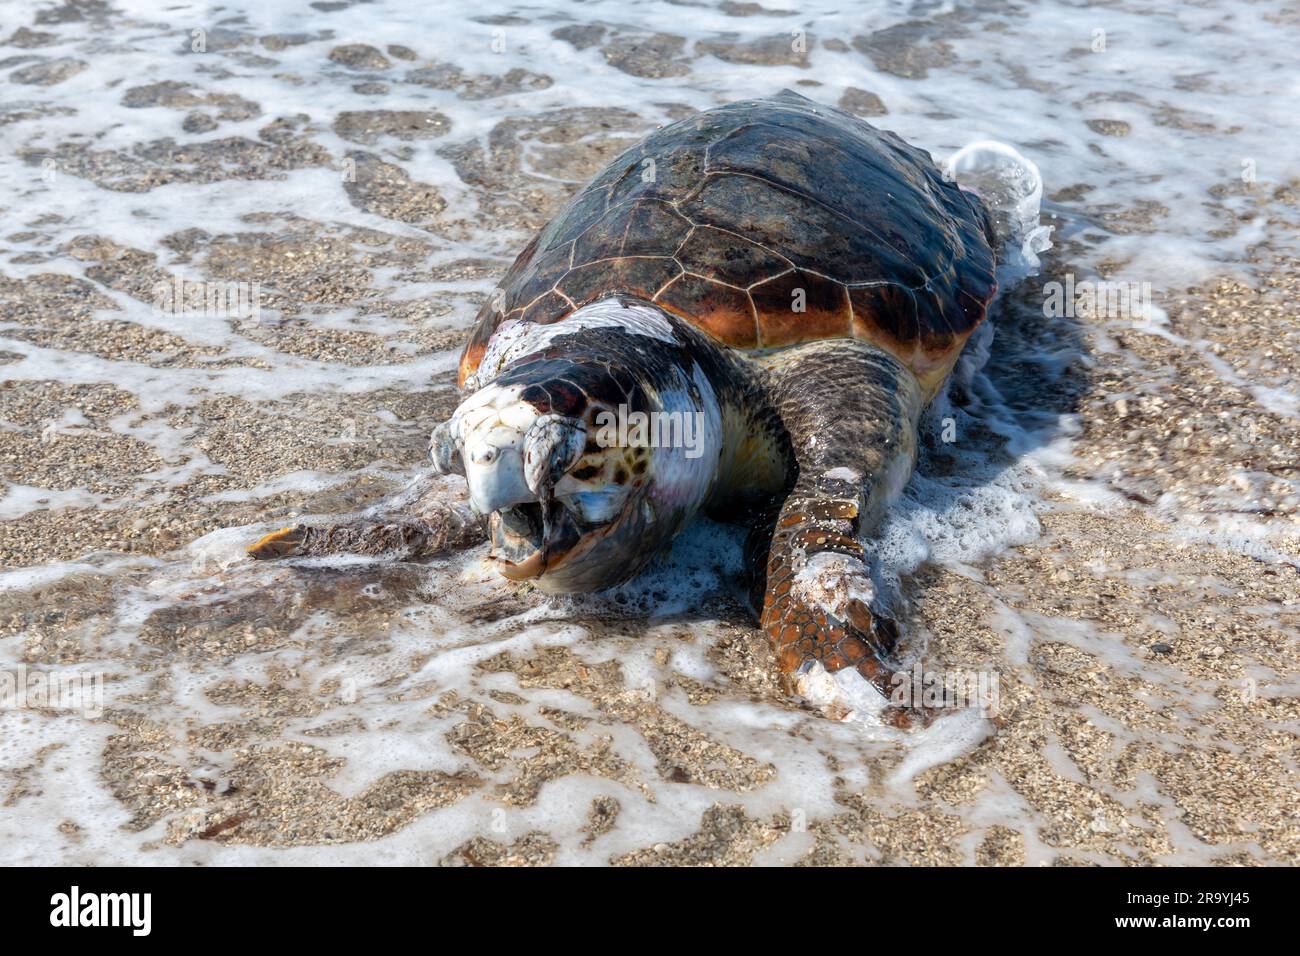 Una tortuga Loggerhead muerta e hinchada fue arrastrada en una playa. Foto de stock